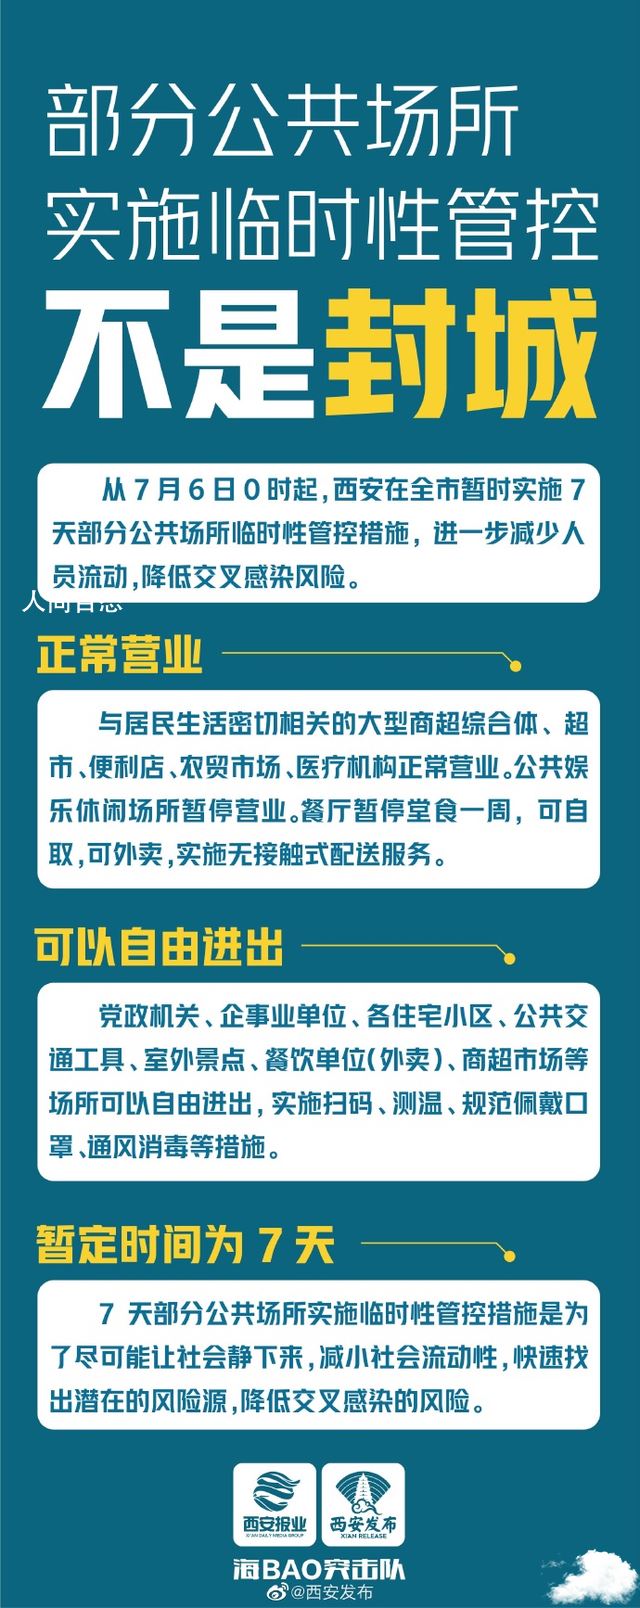 西安:临时性管控不是“封城” 西安部分区域实行封闭管理